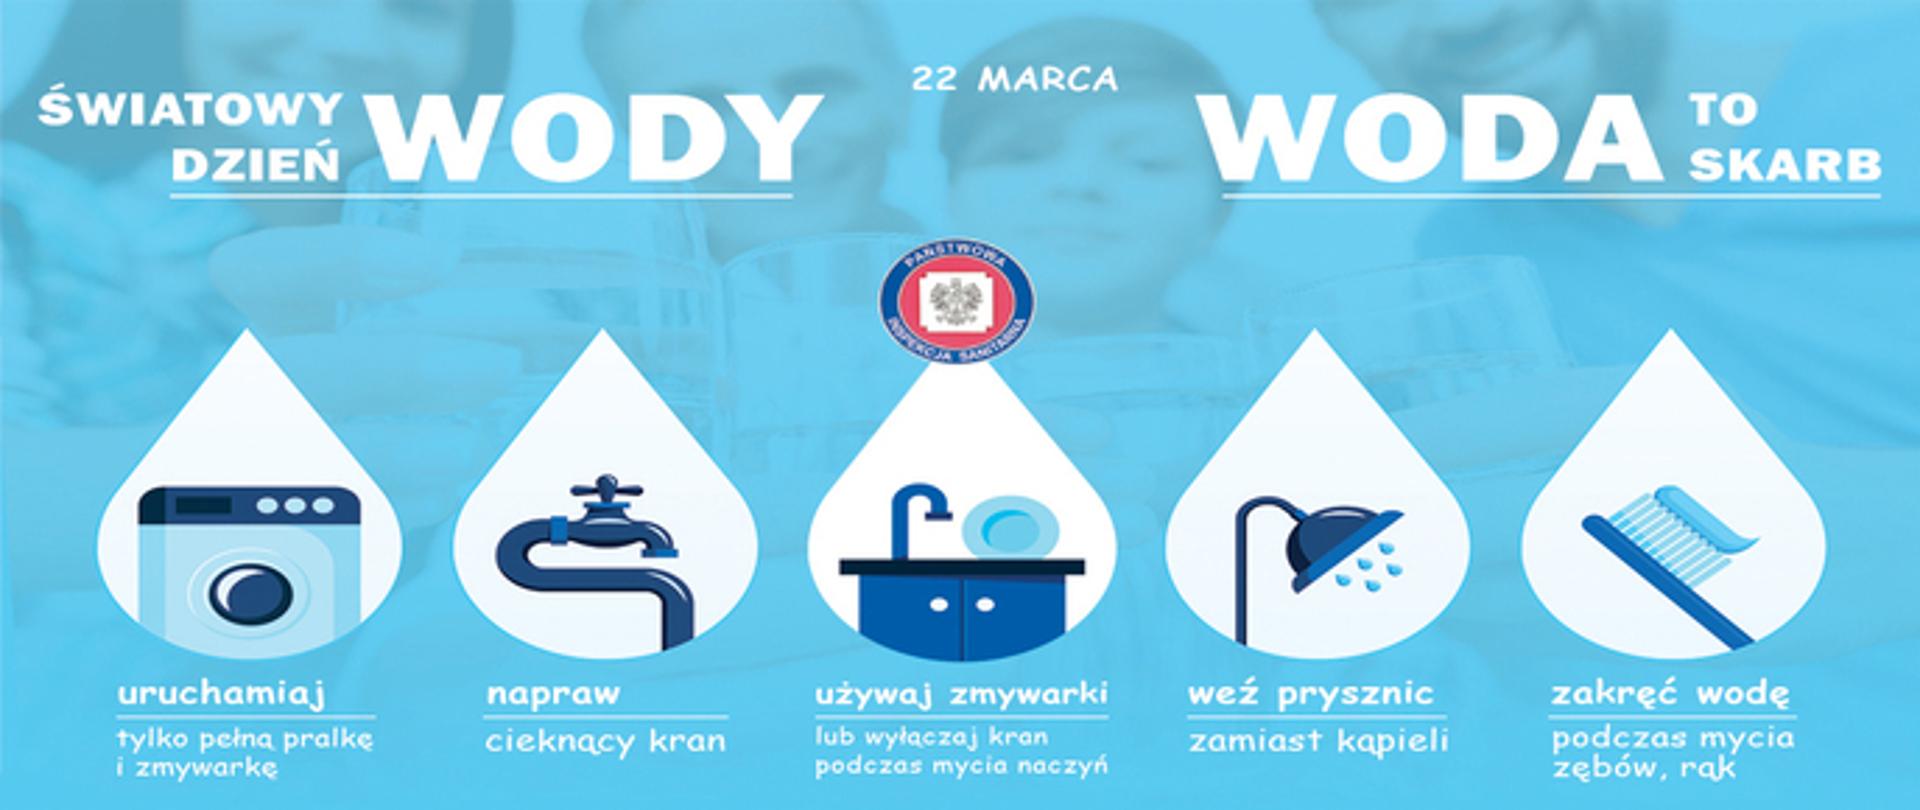 Światowy dzień wody 